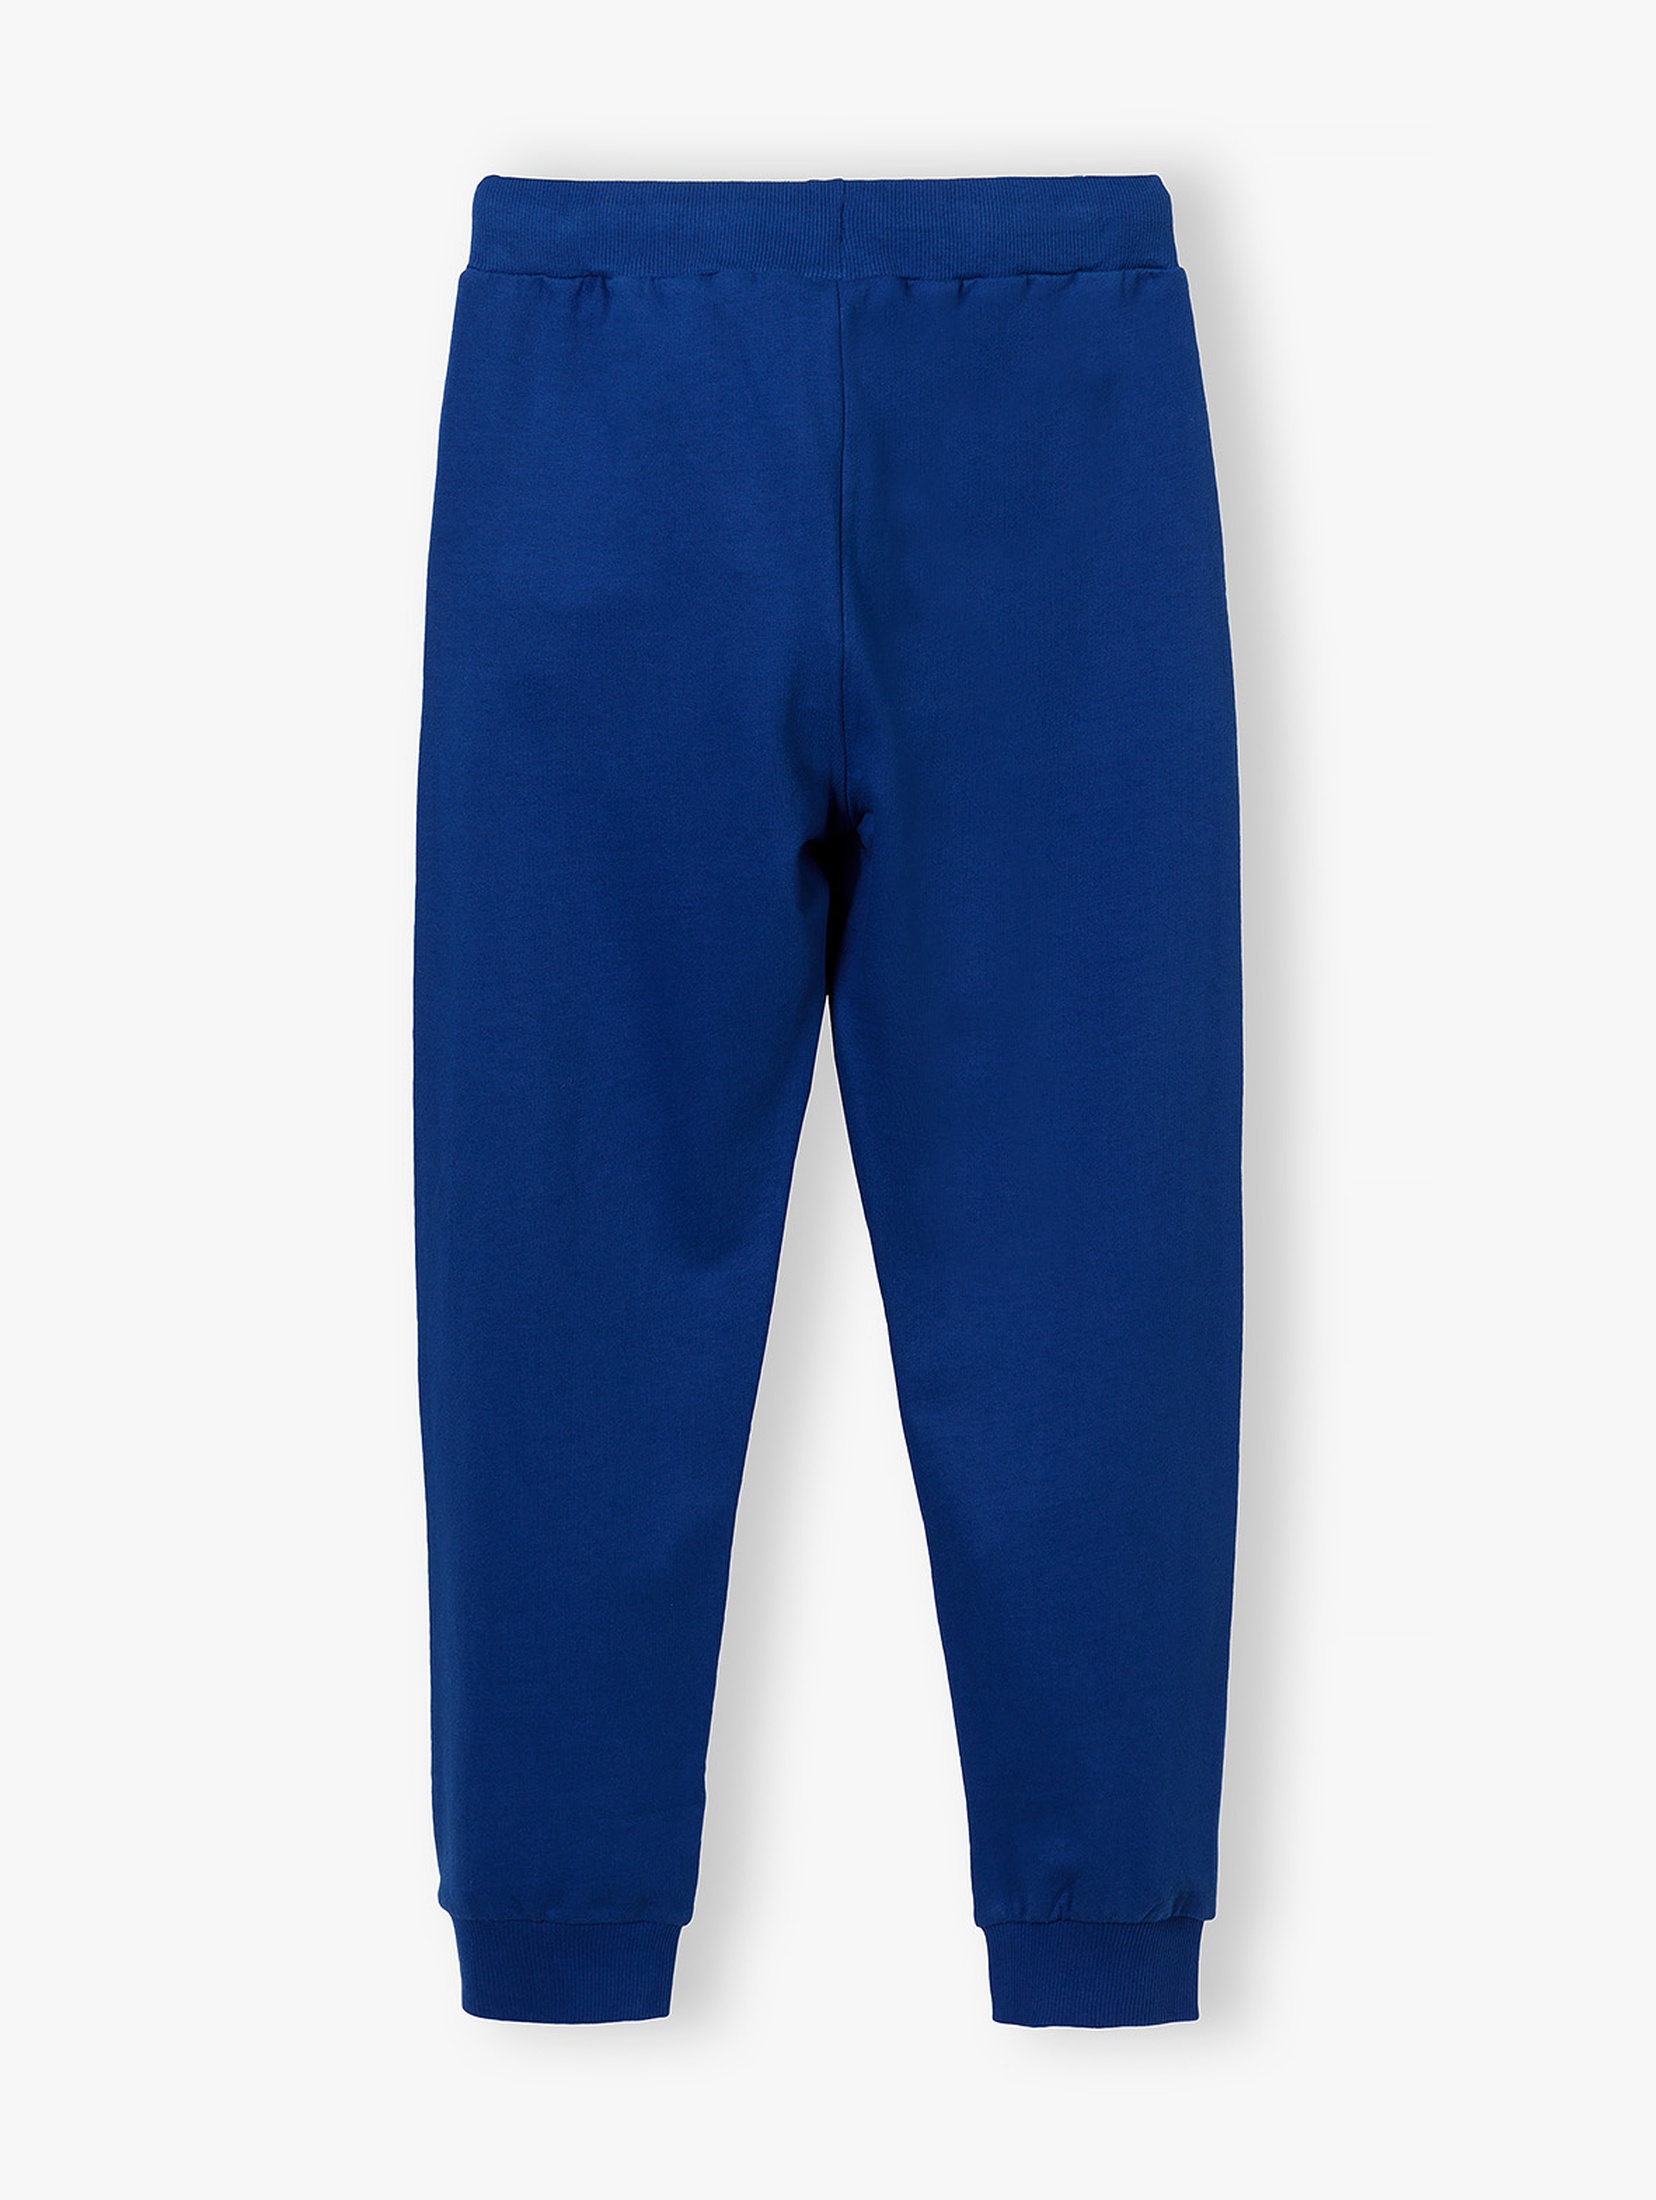 Dresowe spodnie dla chłopca bawełniane - niebieskie